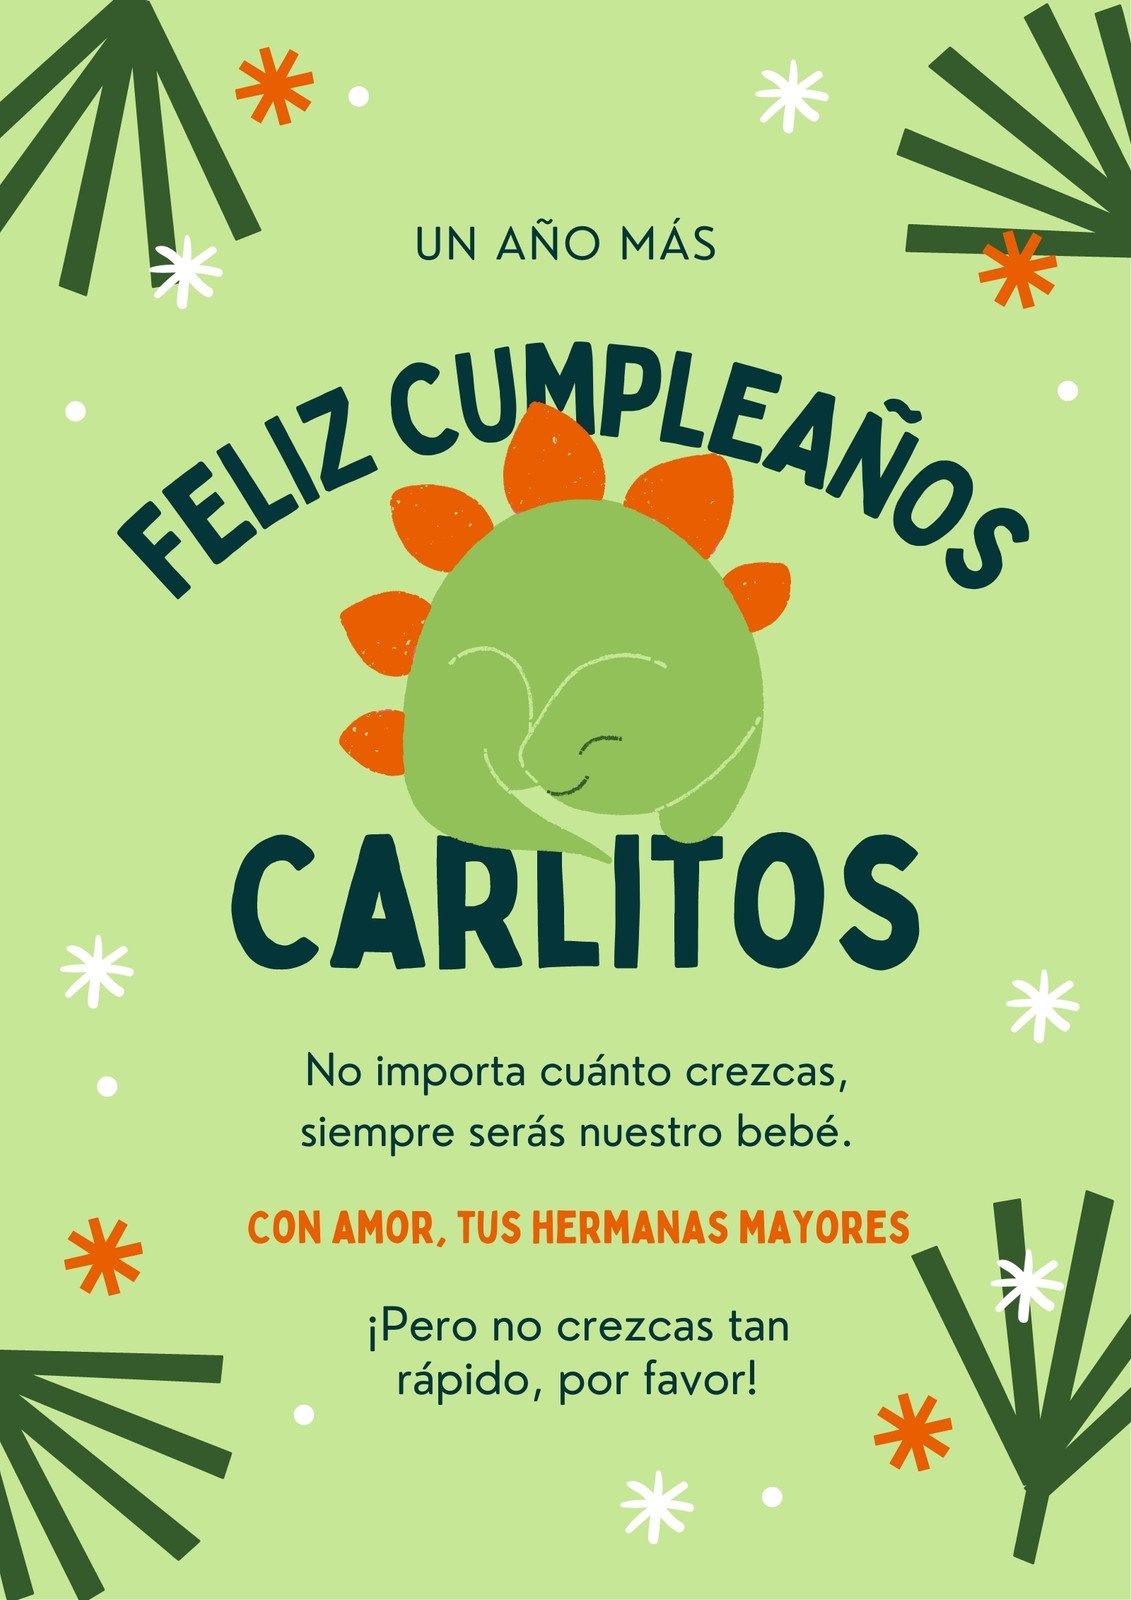 Estudiante Mencionar Hizo un contrato Plantillas para carteles de cumpleaños gratis | Canva